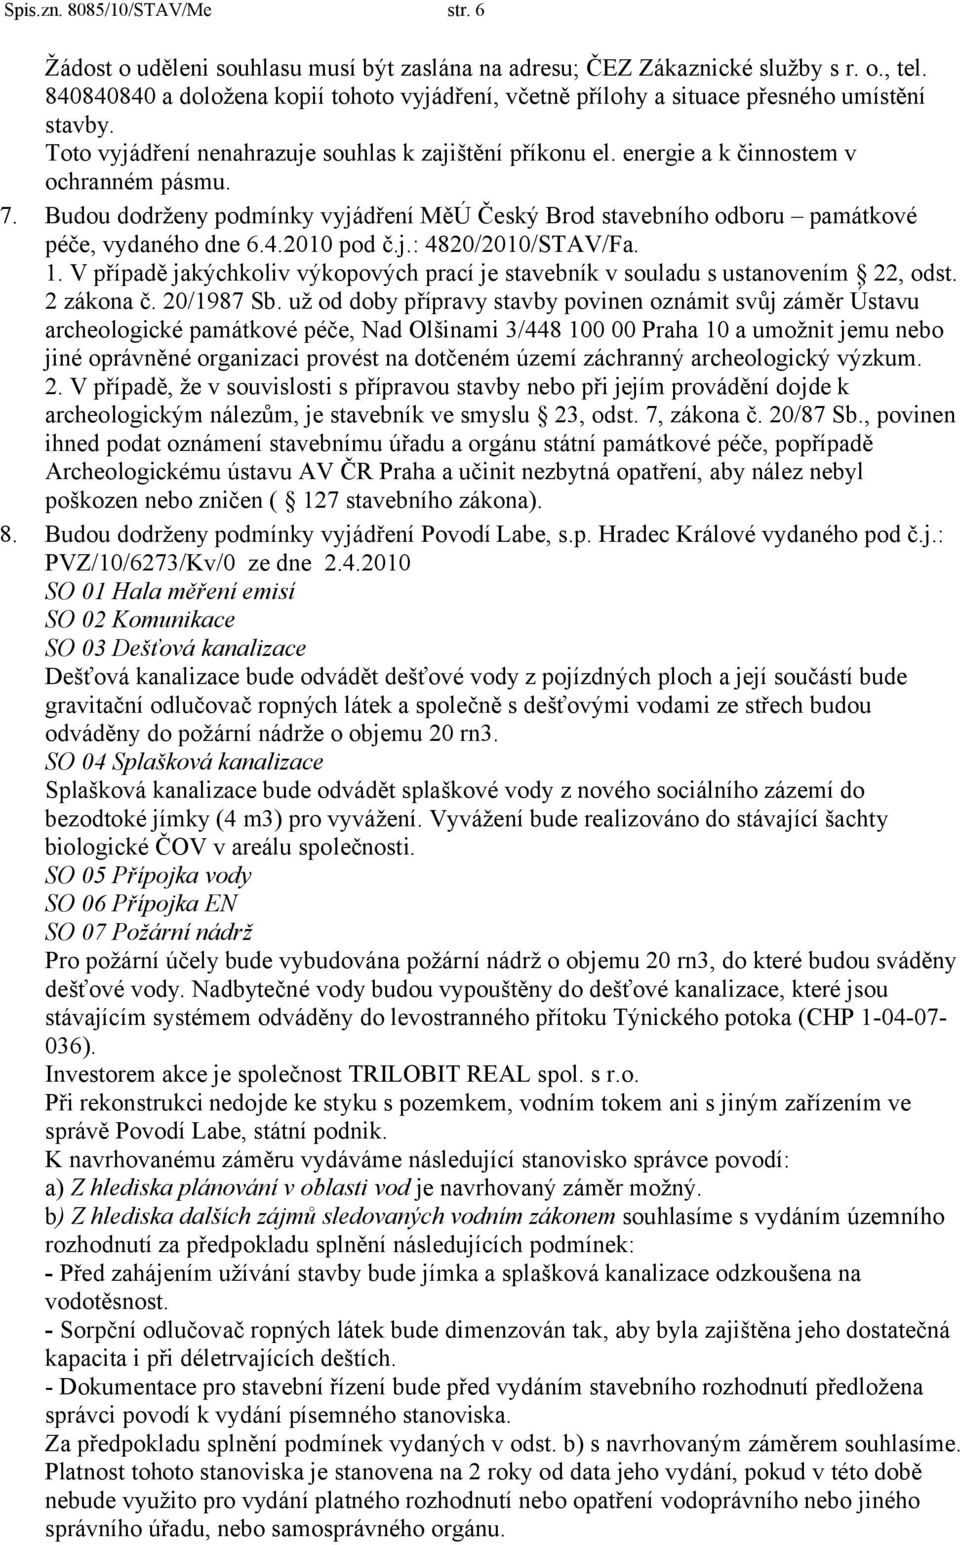 Budou dodrženy podmínky vyjádření MěÚ Český Brod stavebního odboru památkové péče, vydaného dne 6.4.2010 pod č.j.: 4820/2010/STAV/Fa. 1.